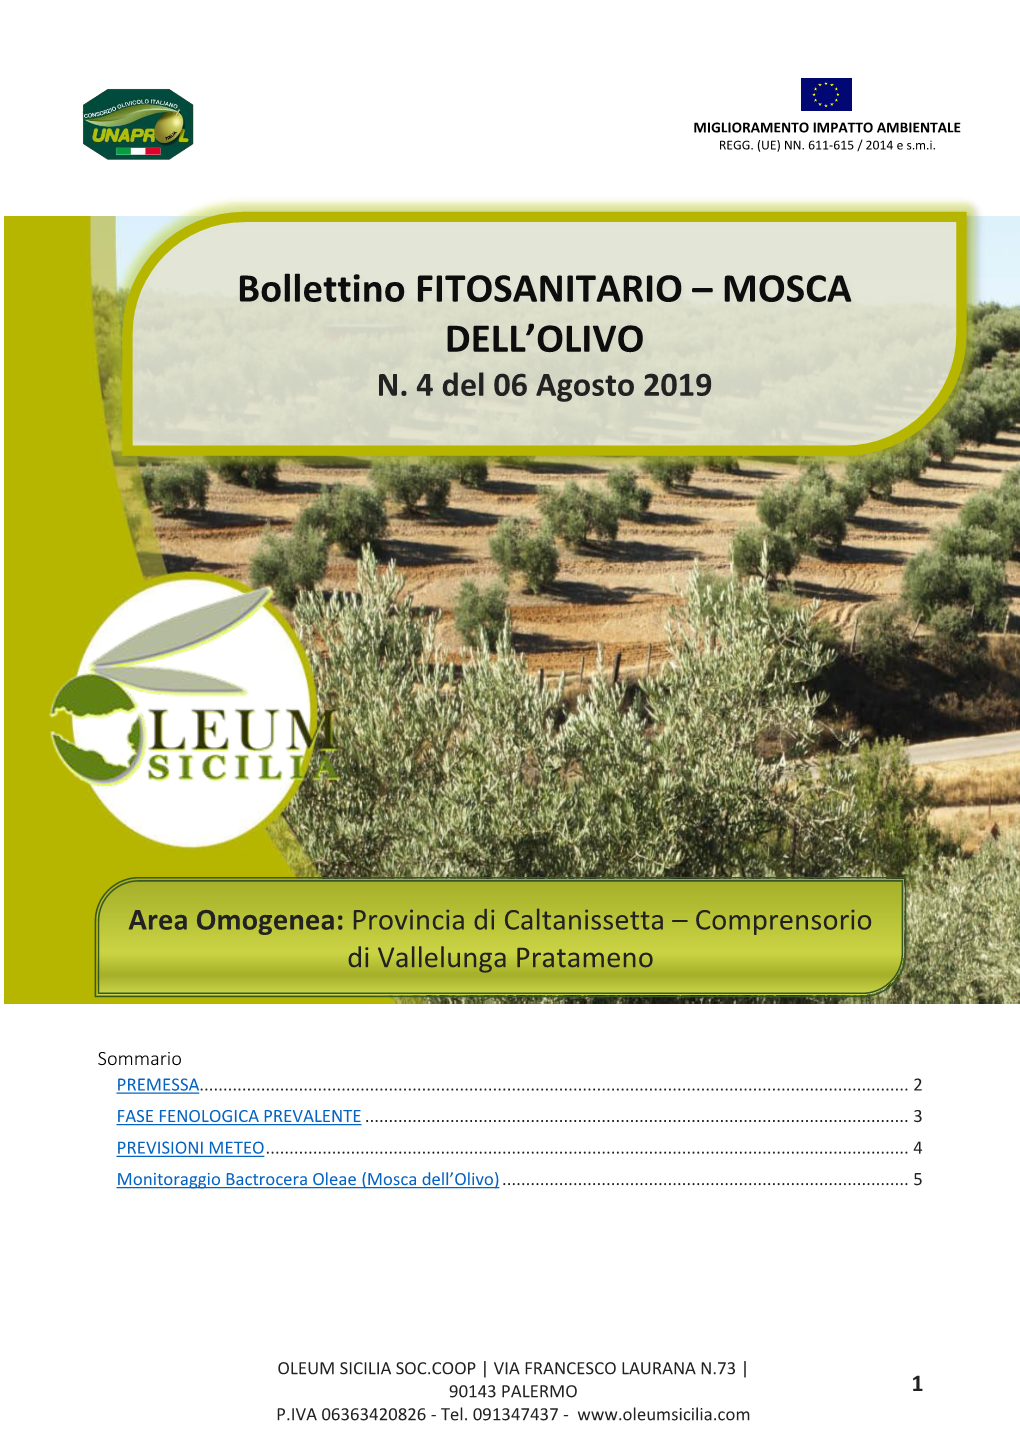 Bollettino FITOSANITARIO – MOSCA DELL'olivo